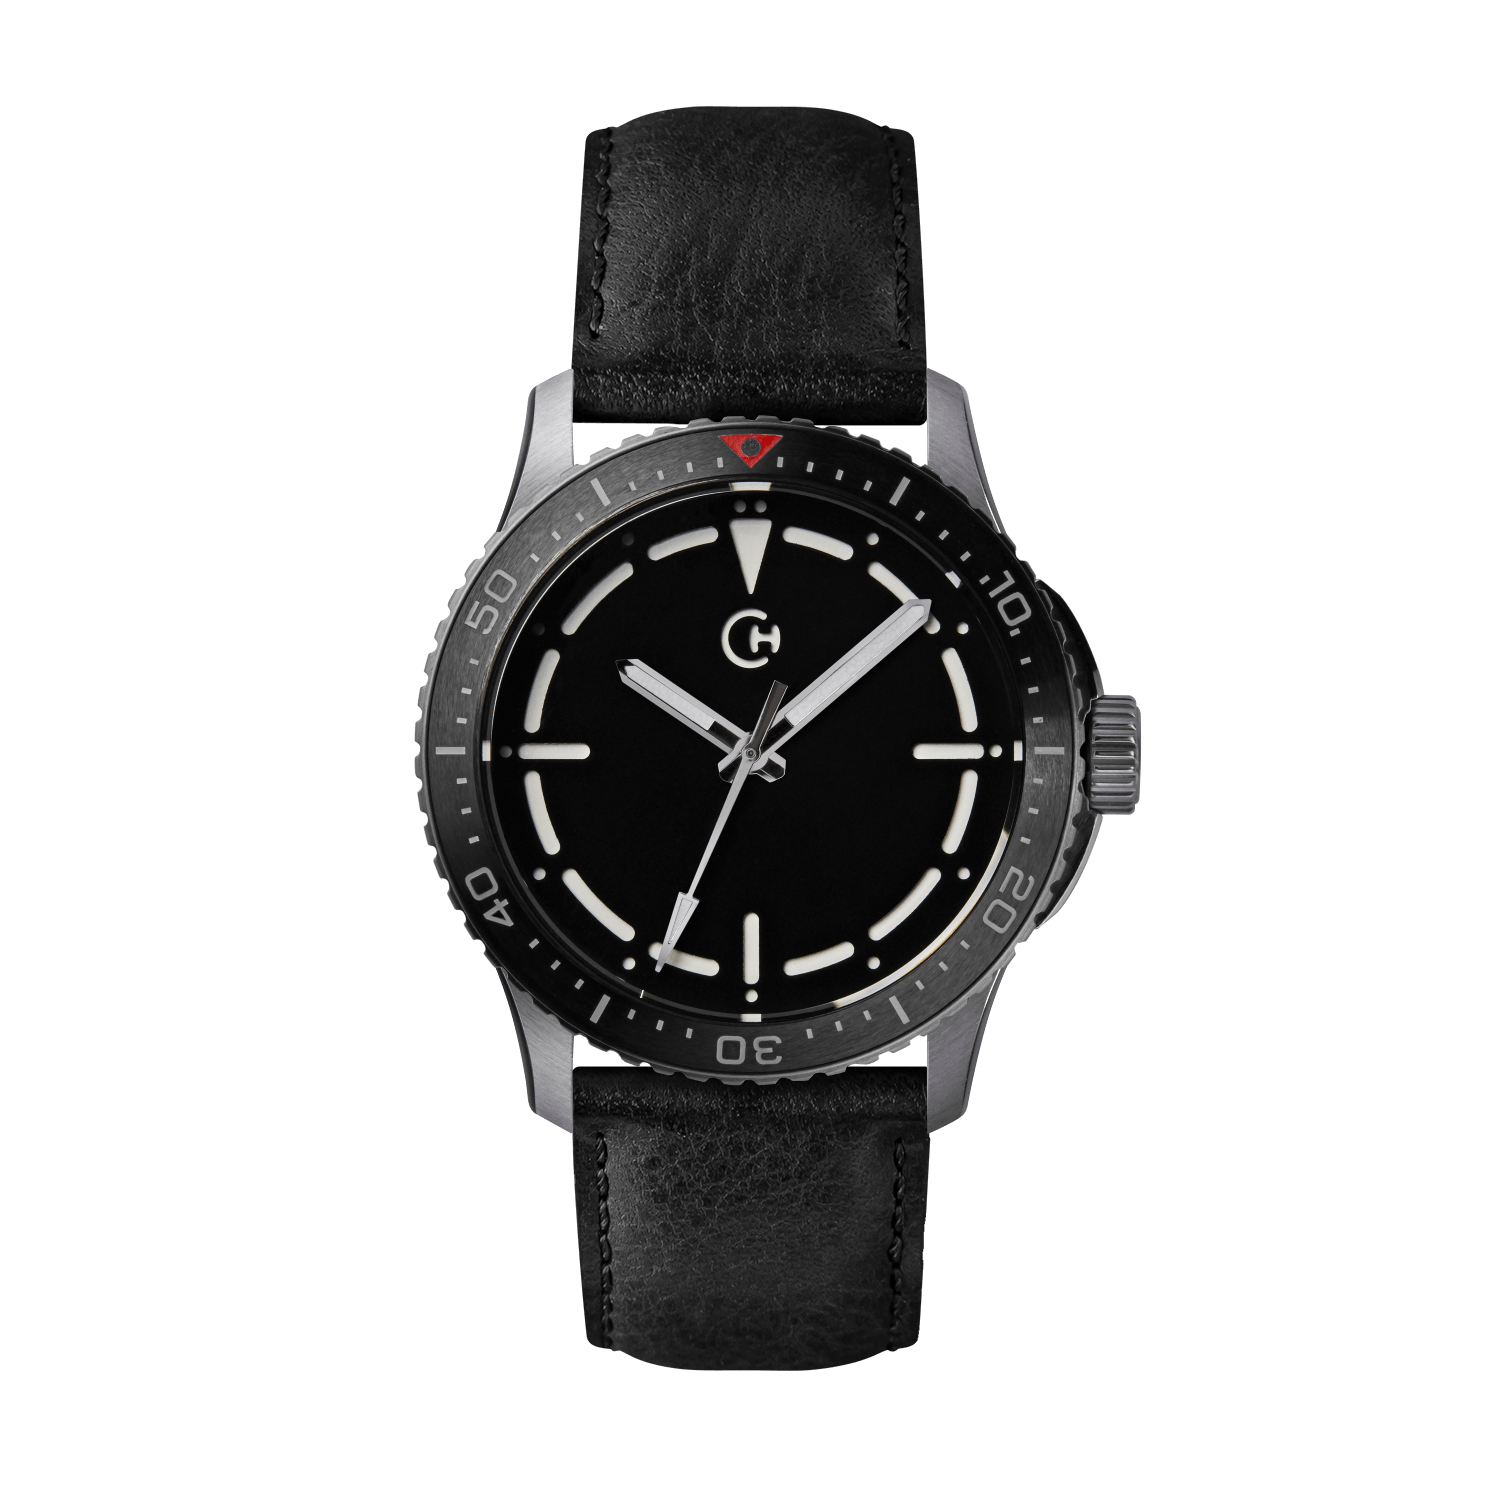 SeaQuest Dive černý kožený řemínek, 22mm, rychloupínací stěžejka, potápěčské hodinky Chronotechna bílý číselník, ocelové pouzdro